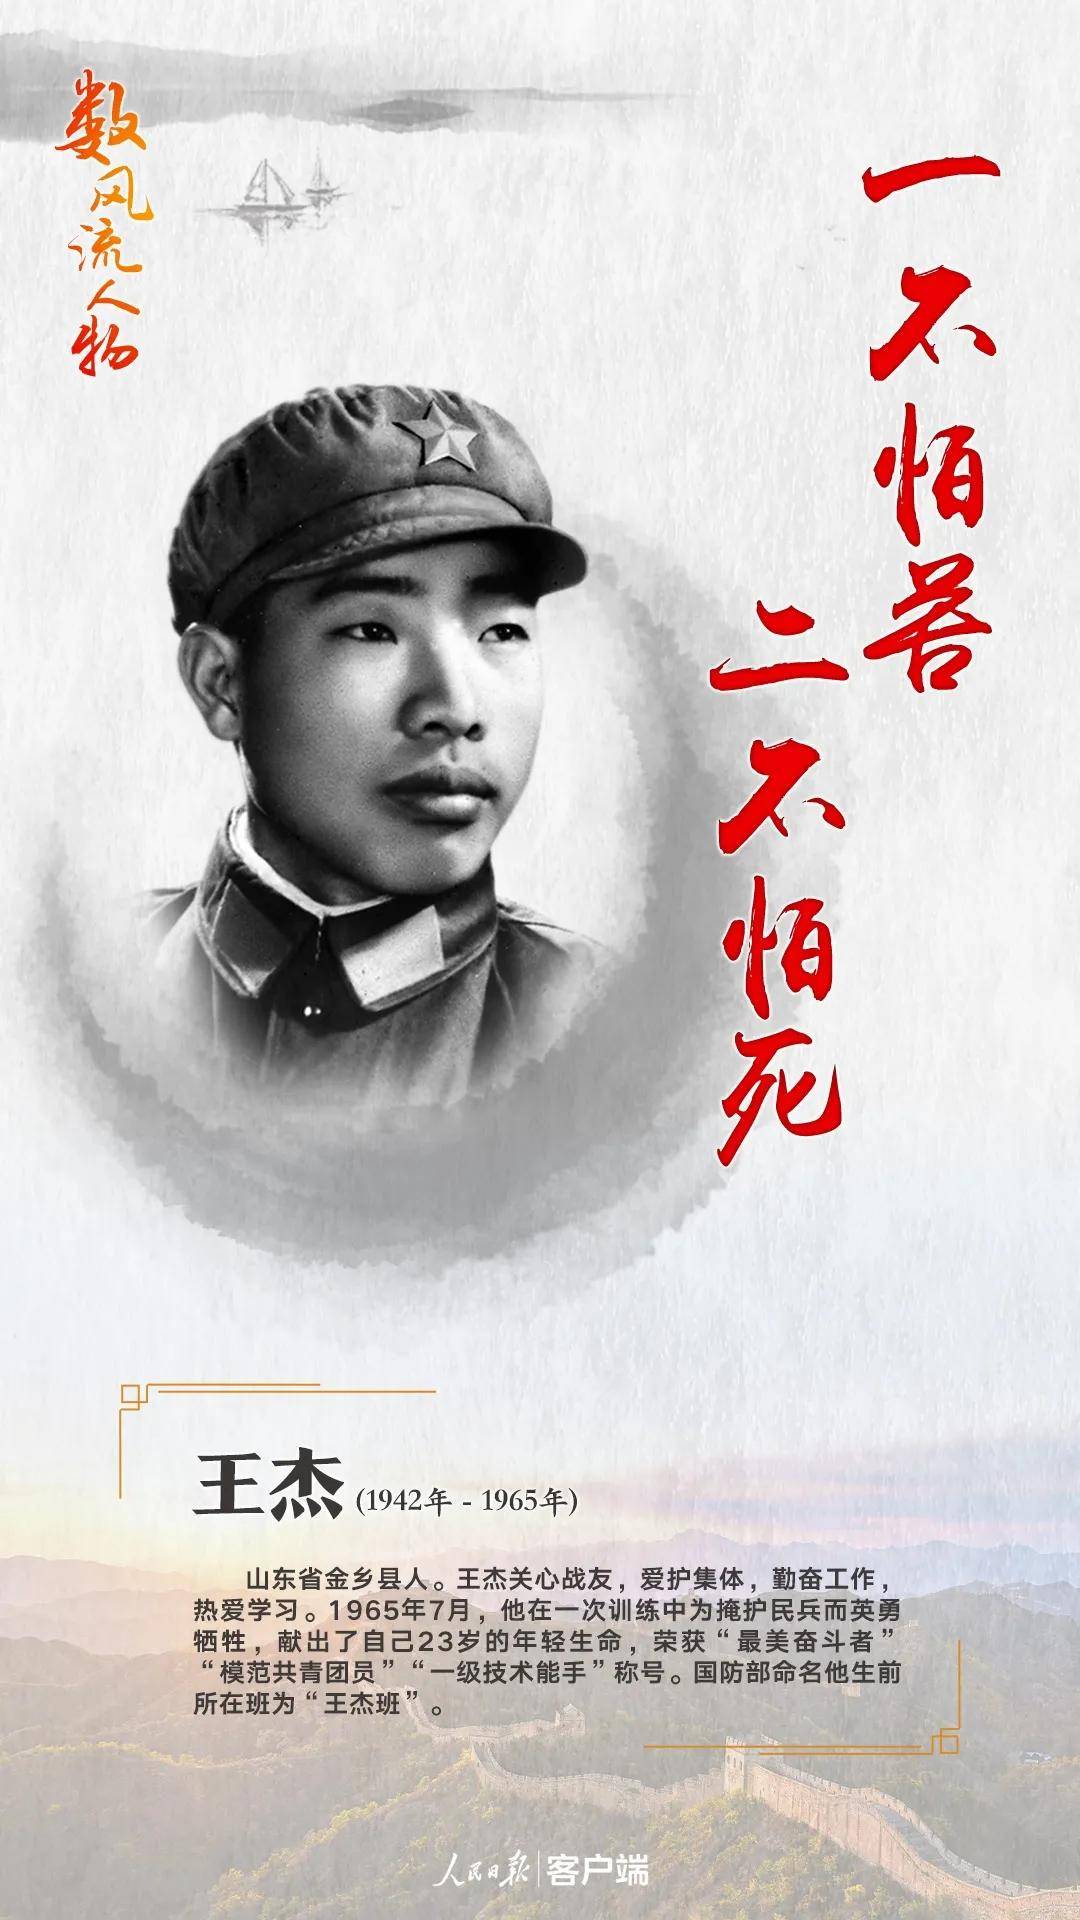 庆祝建党100周年 讲巾帼英雄故事 |(2)王杰:一不怕苦 二不怕死